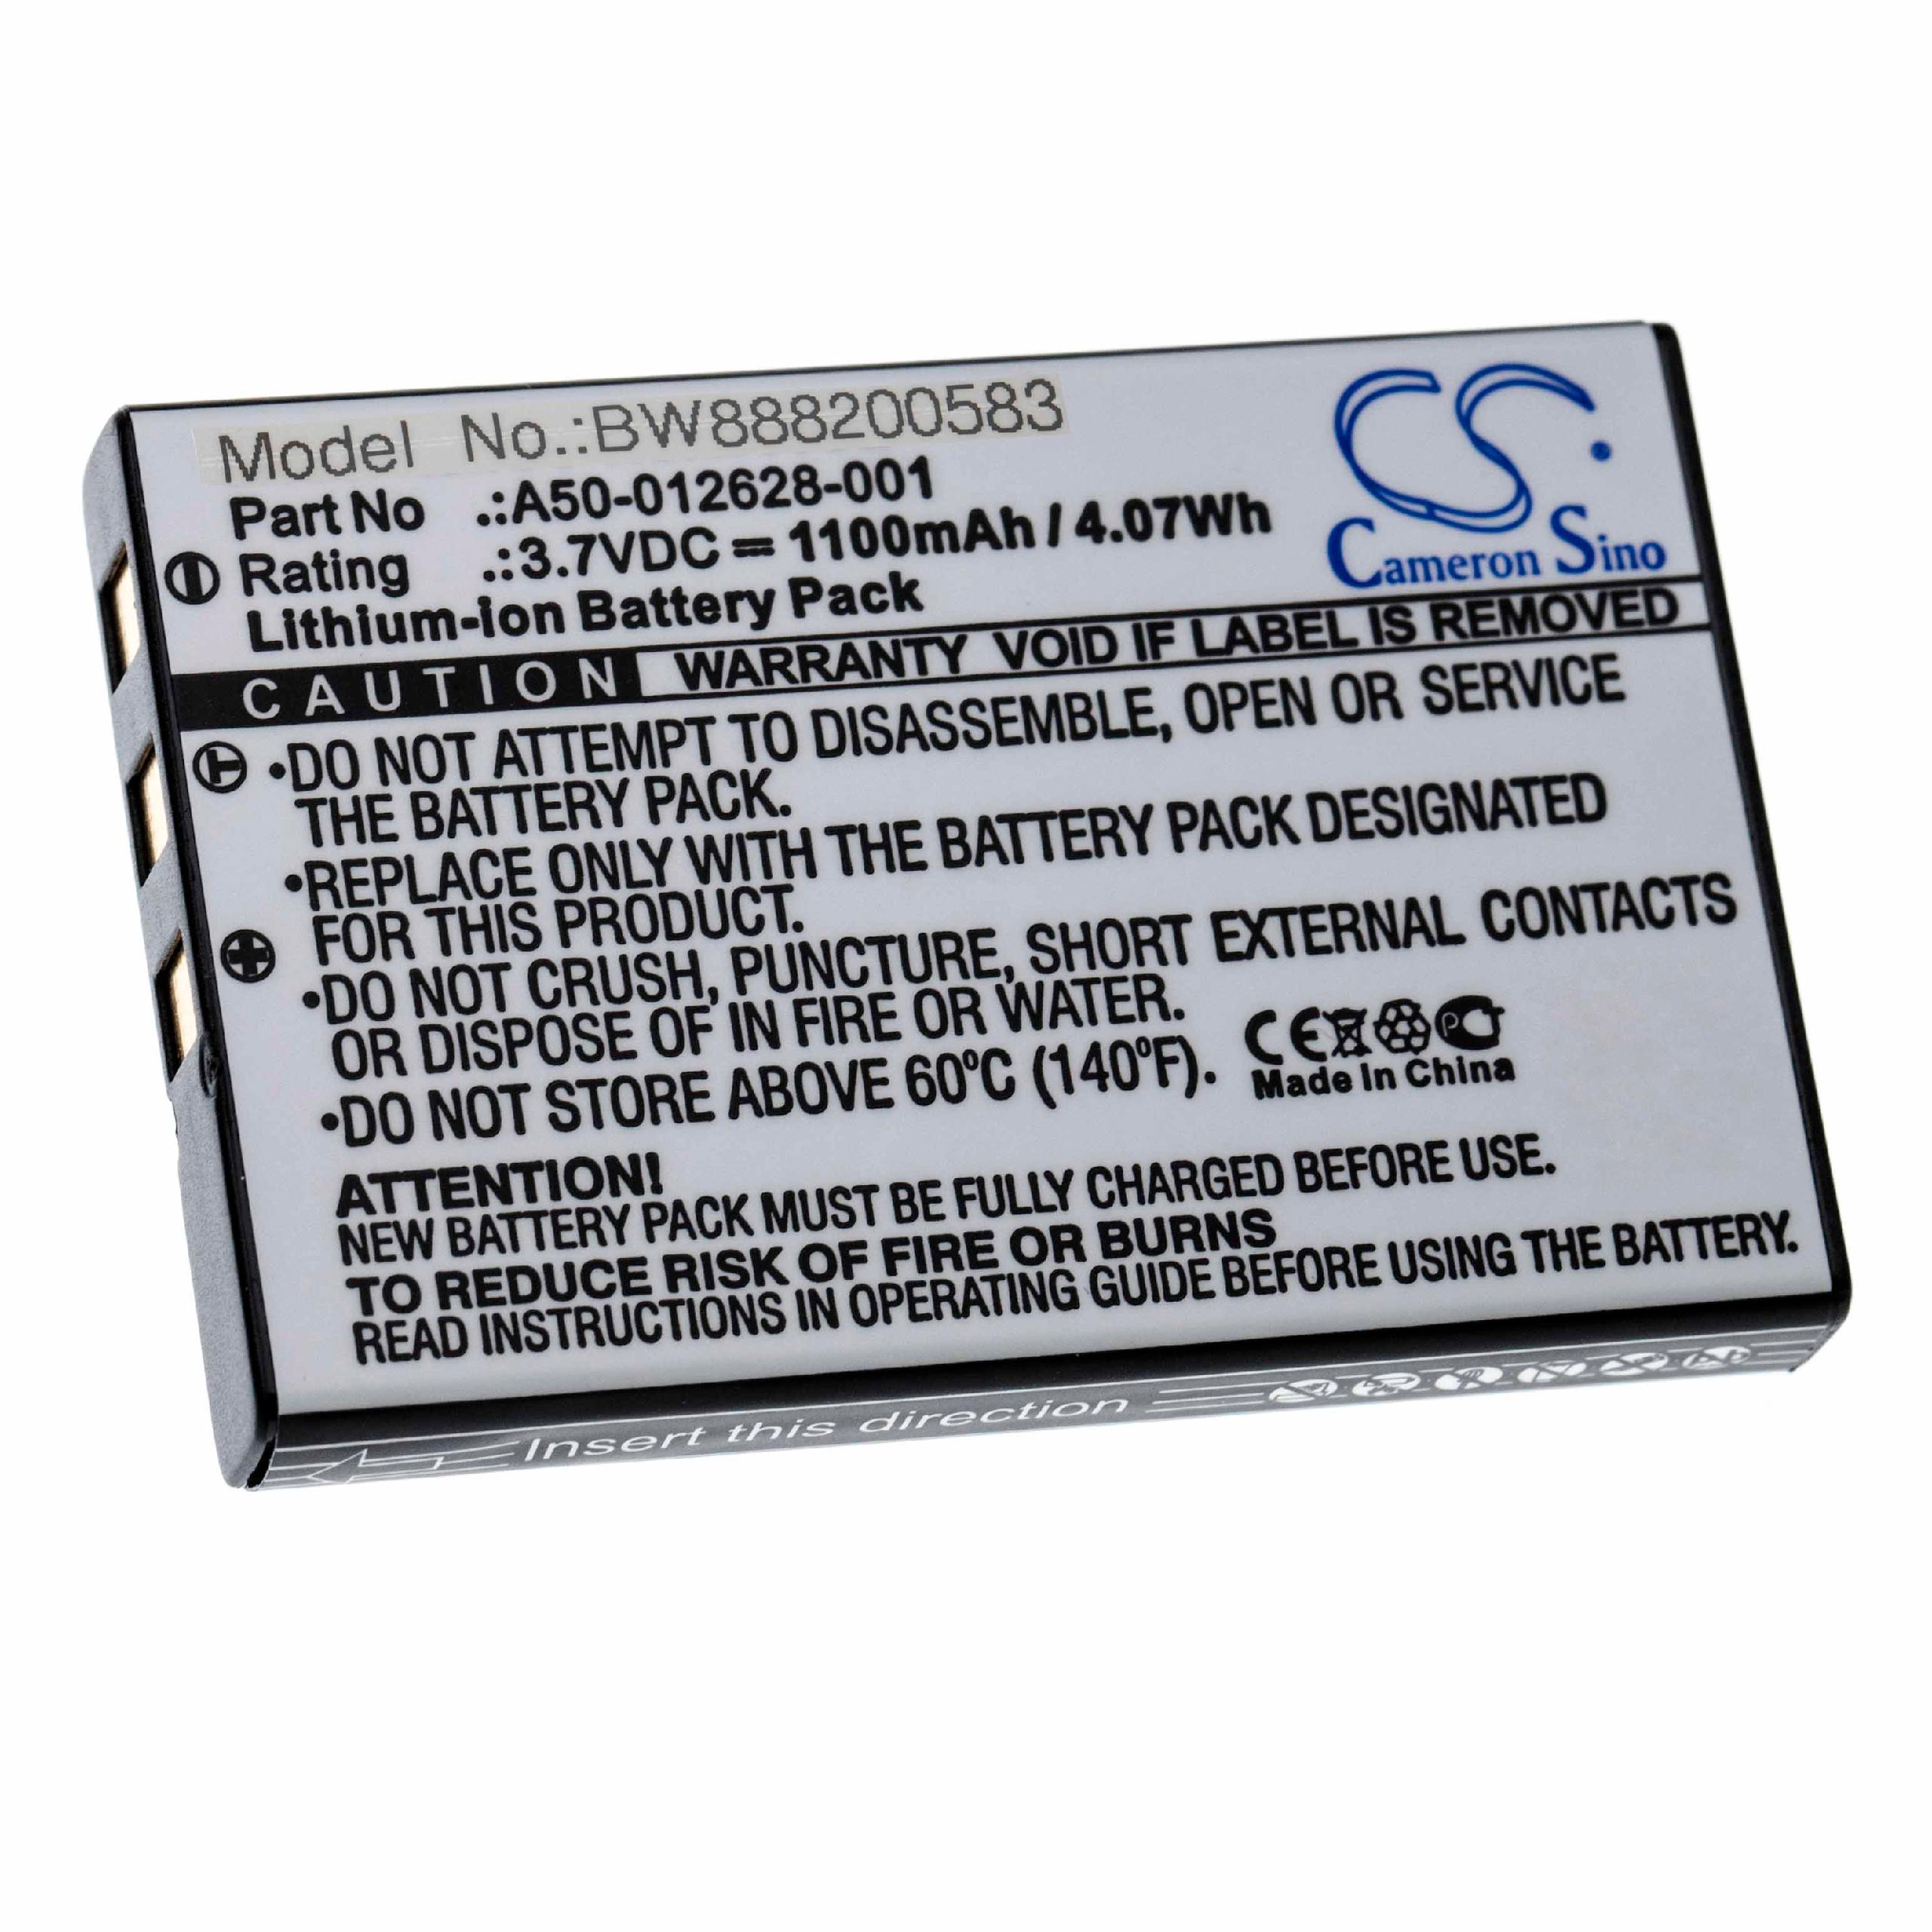 Batterie remplace Nec A50-012628-001 pour téléphone - 1100mAh 3,7V Li-ion